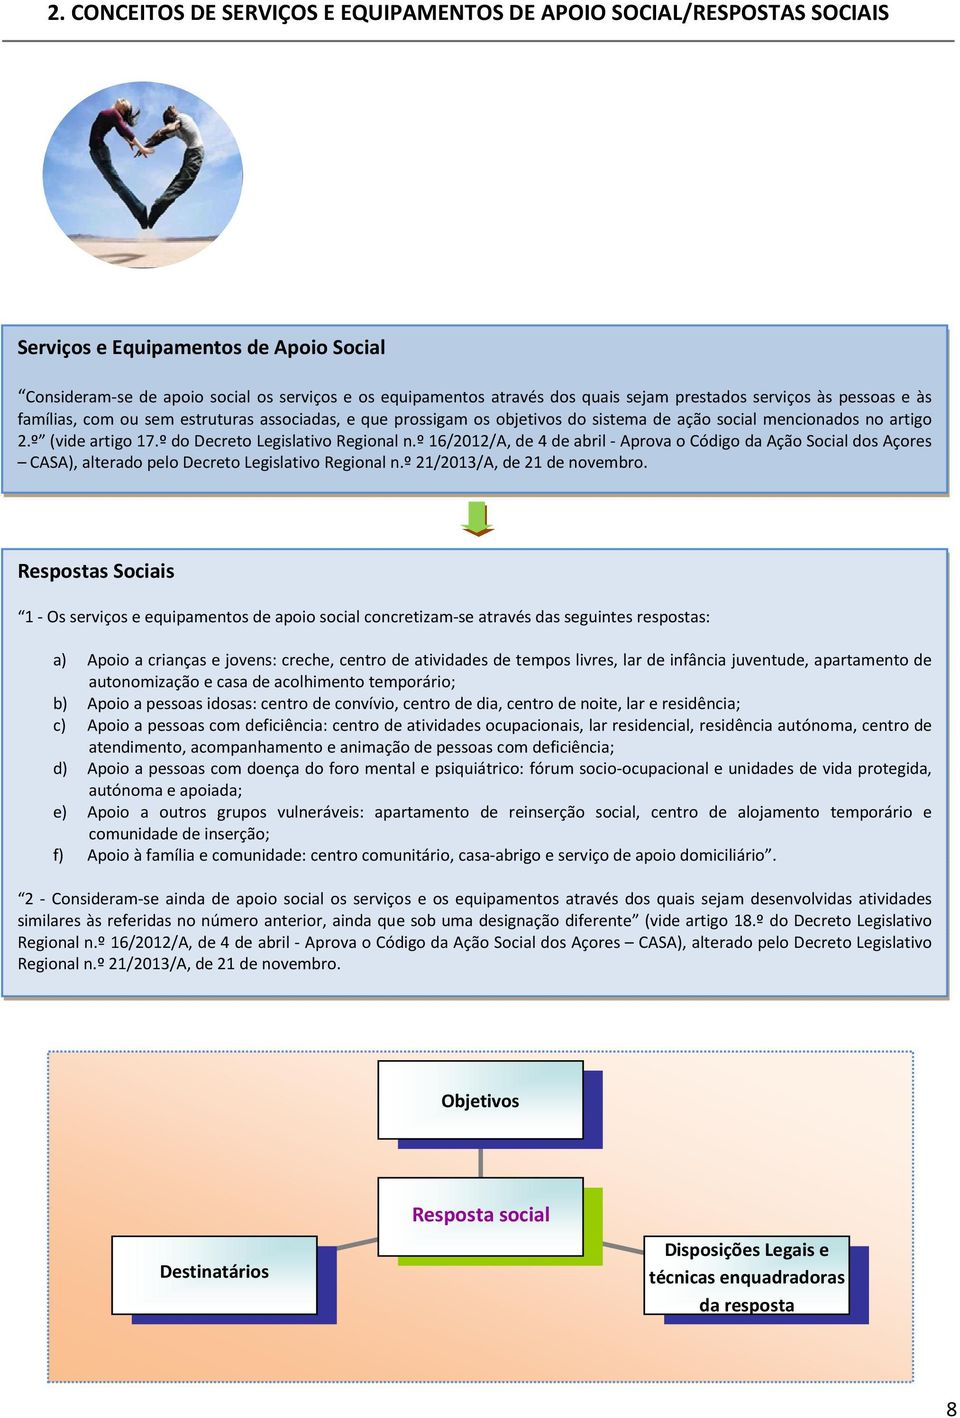 º do Decreto Legislativo Regional n.º 16/2012/A, de 4 de abril - Aprova o Código da Ação ocial dos Açores CAA), alterado pelo Decreto Legislativo Regional n.º 21/2013/A, de 21 de novembro.